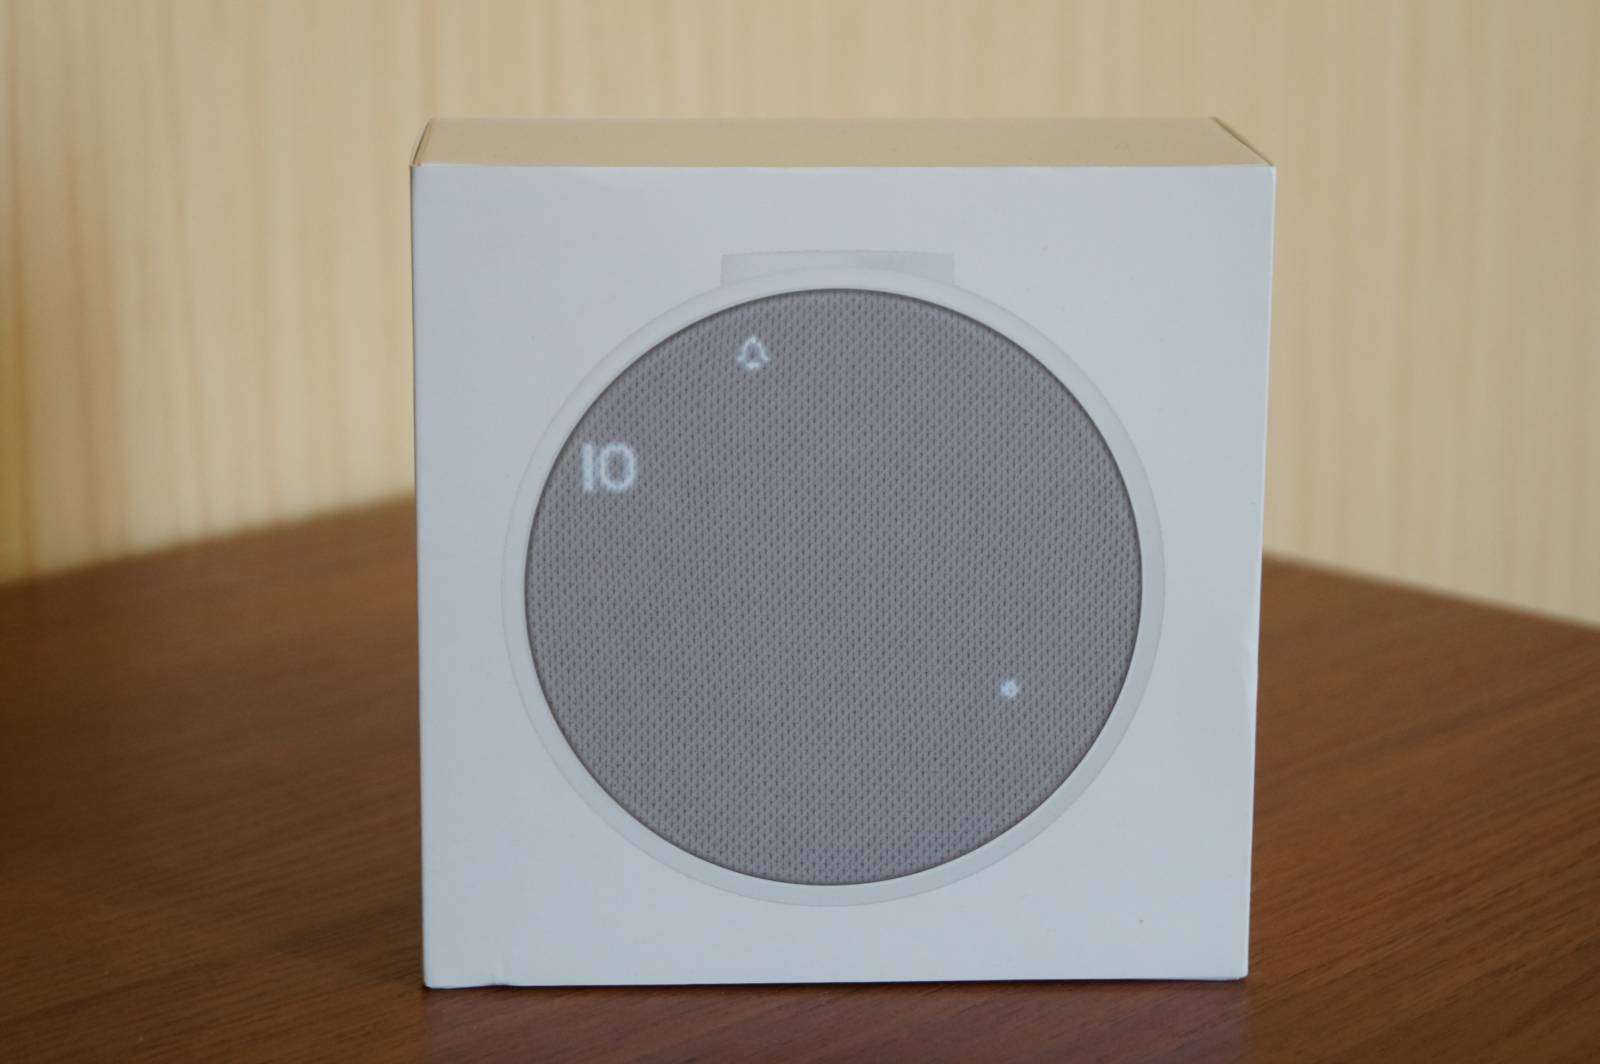 Другие - Китай: Колонка-будильник Xiaomi Mi Music Alarm Clock